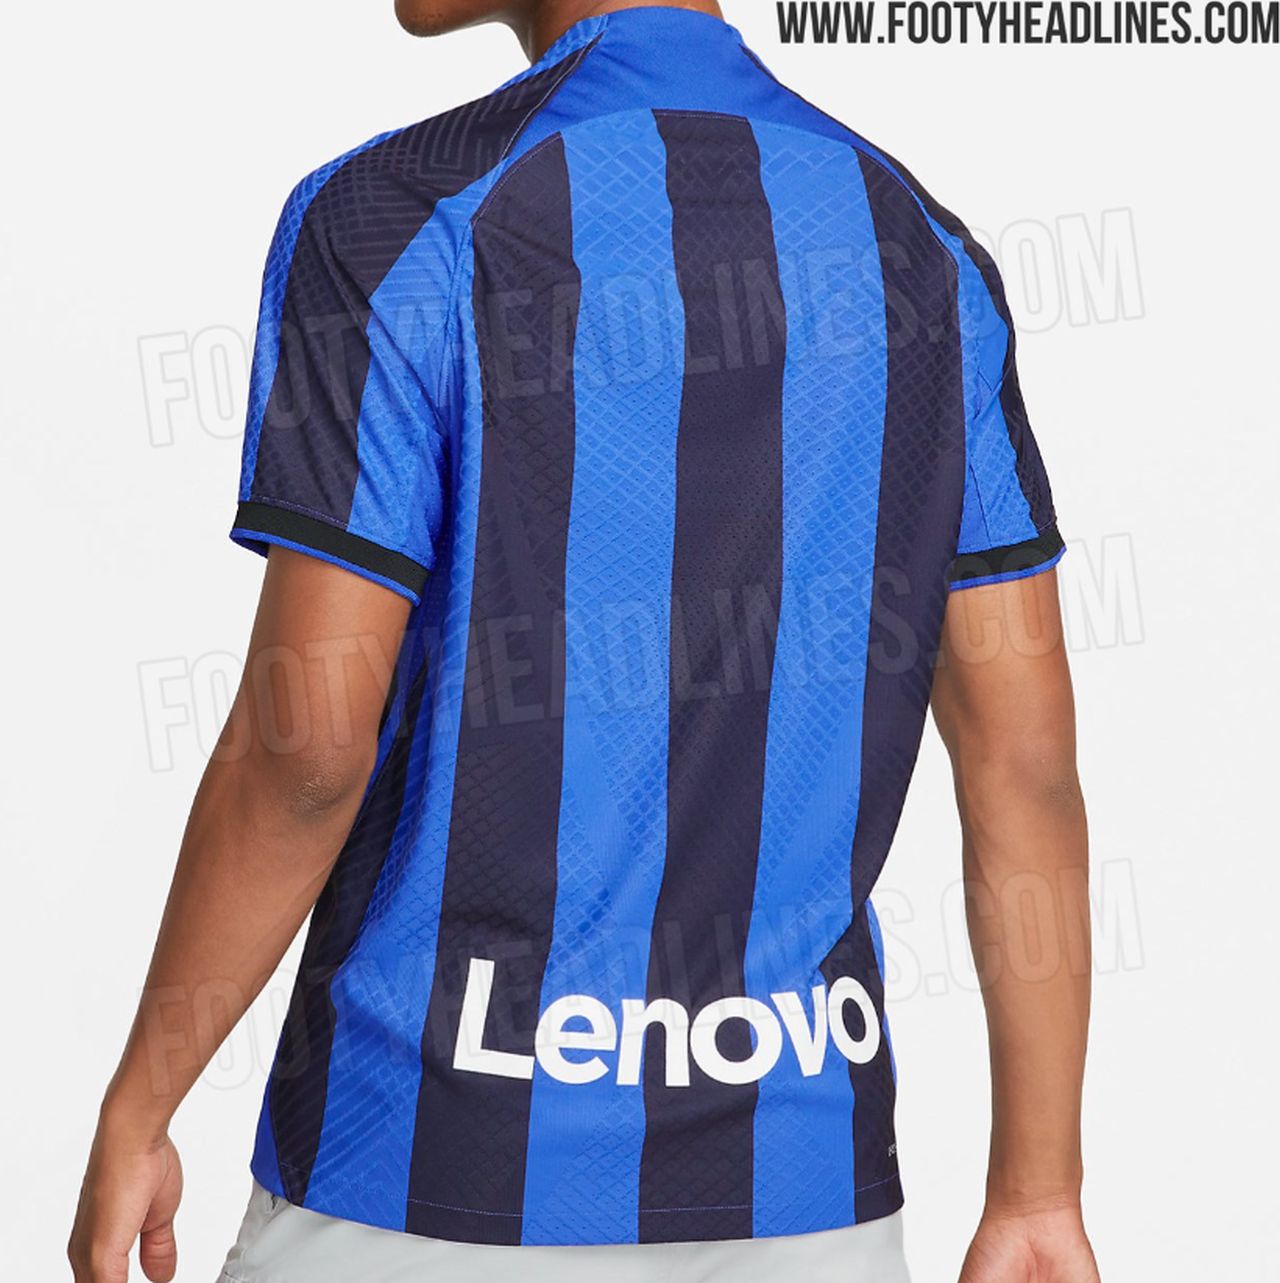 La nuova maglia dell'Inter per la stagione 2022-23